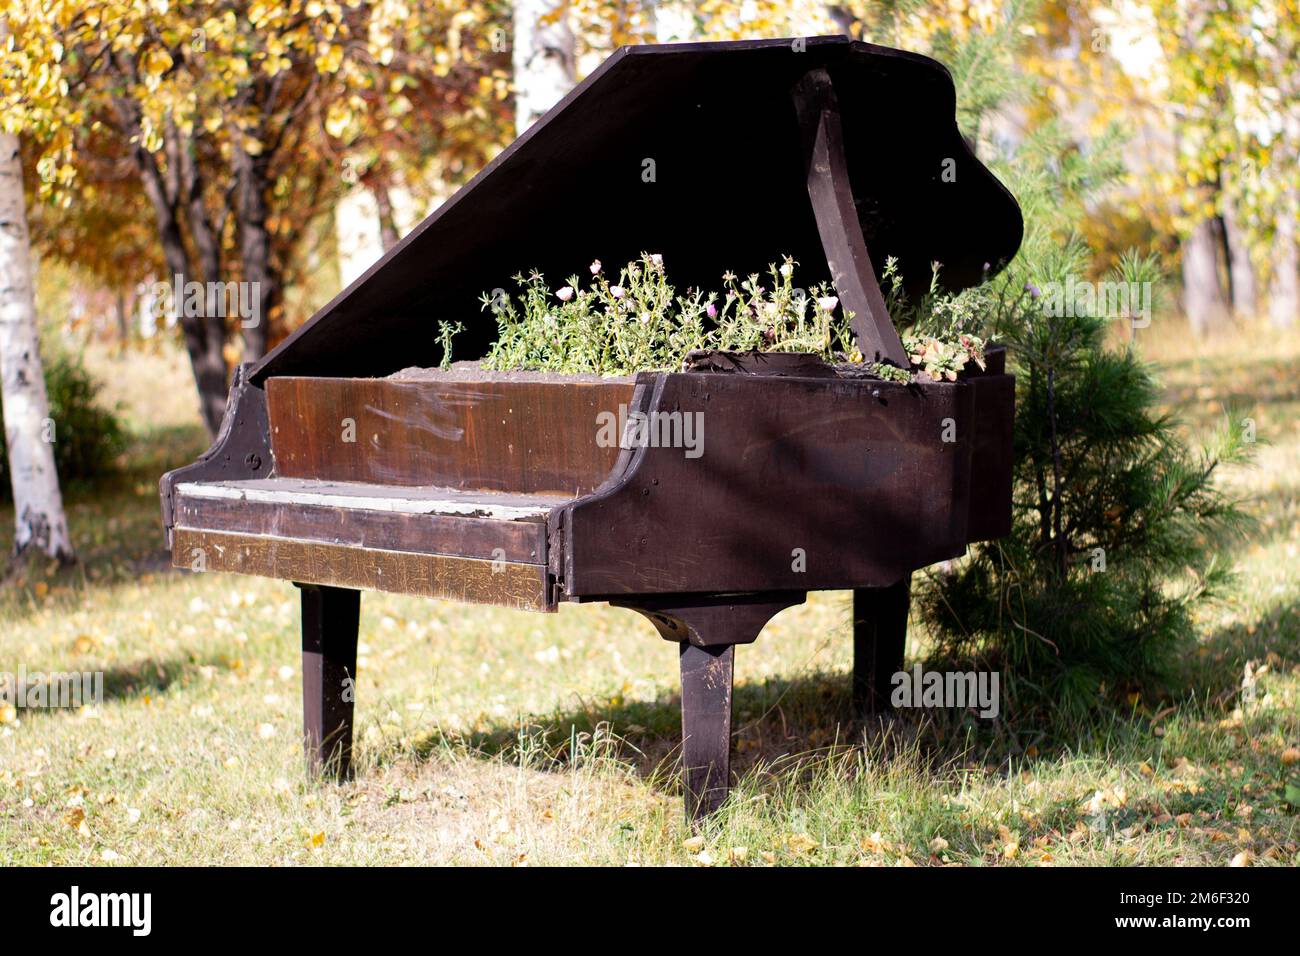 La cama para las flores equipada en un viejo piano negro en el parque de la ciudad. Petunia florece en una cama creativa inusual Foto de stock